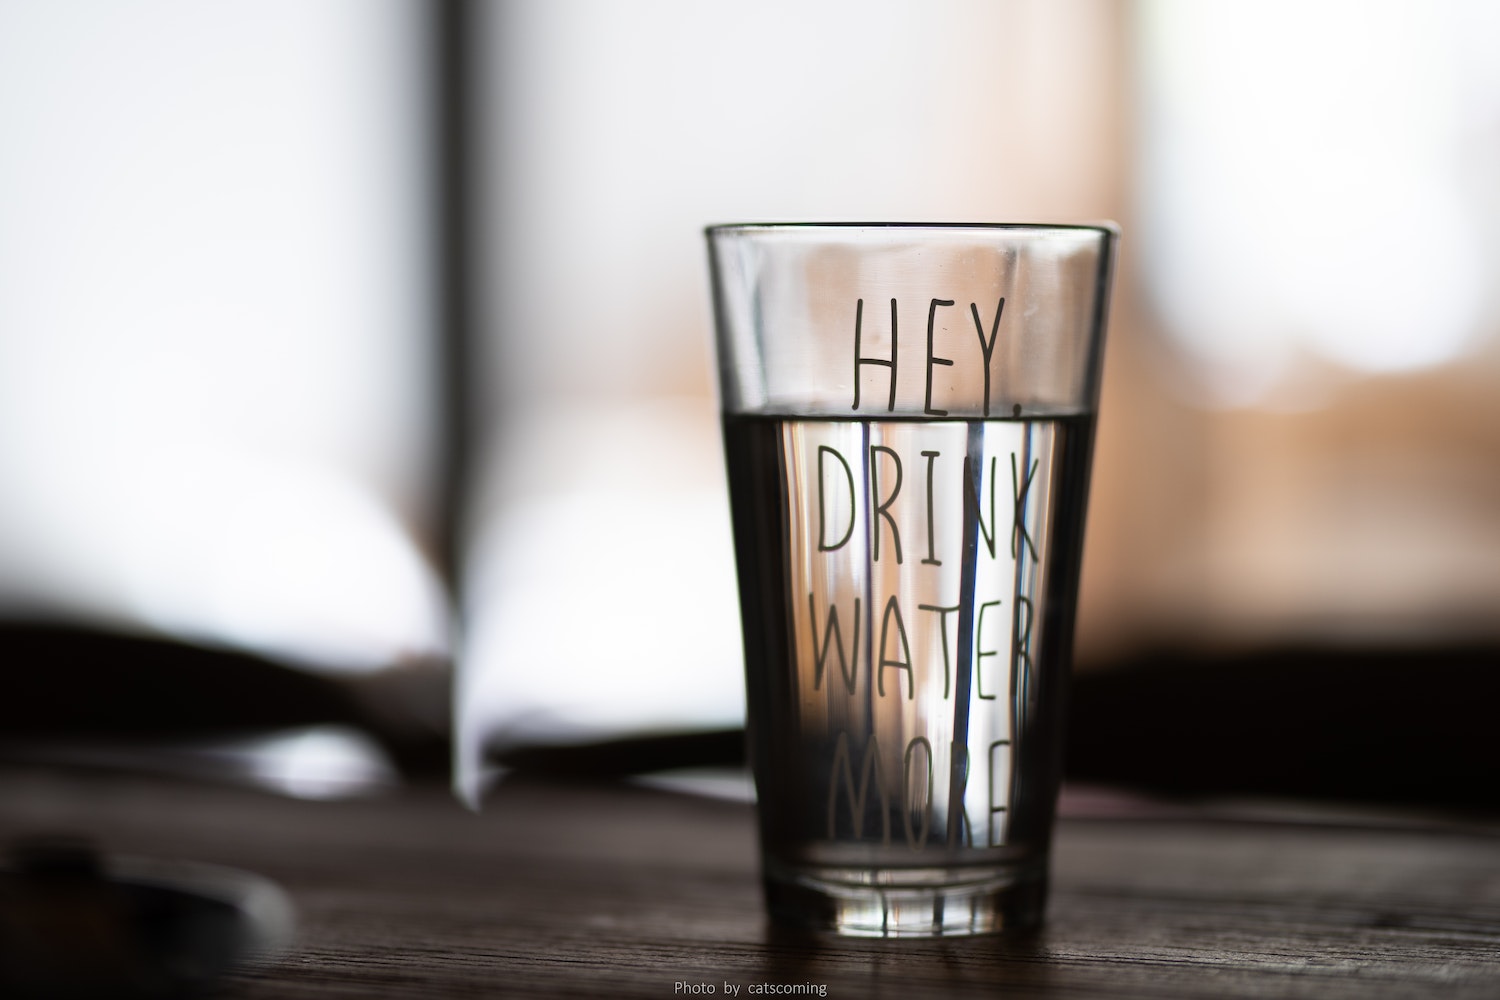 Beneficios del agua para la salud